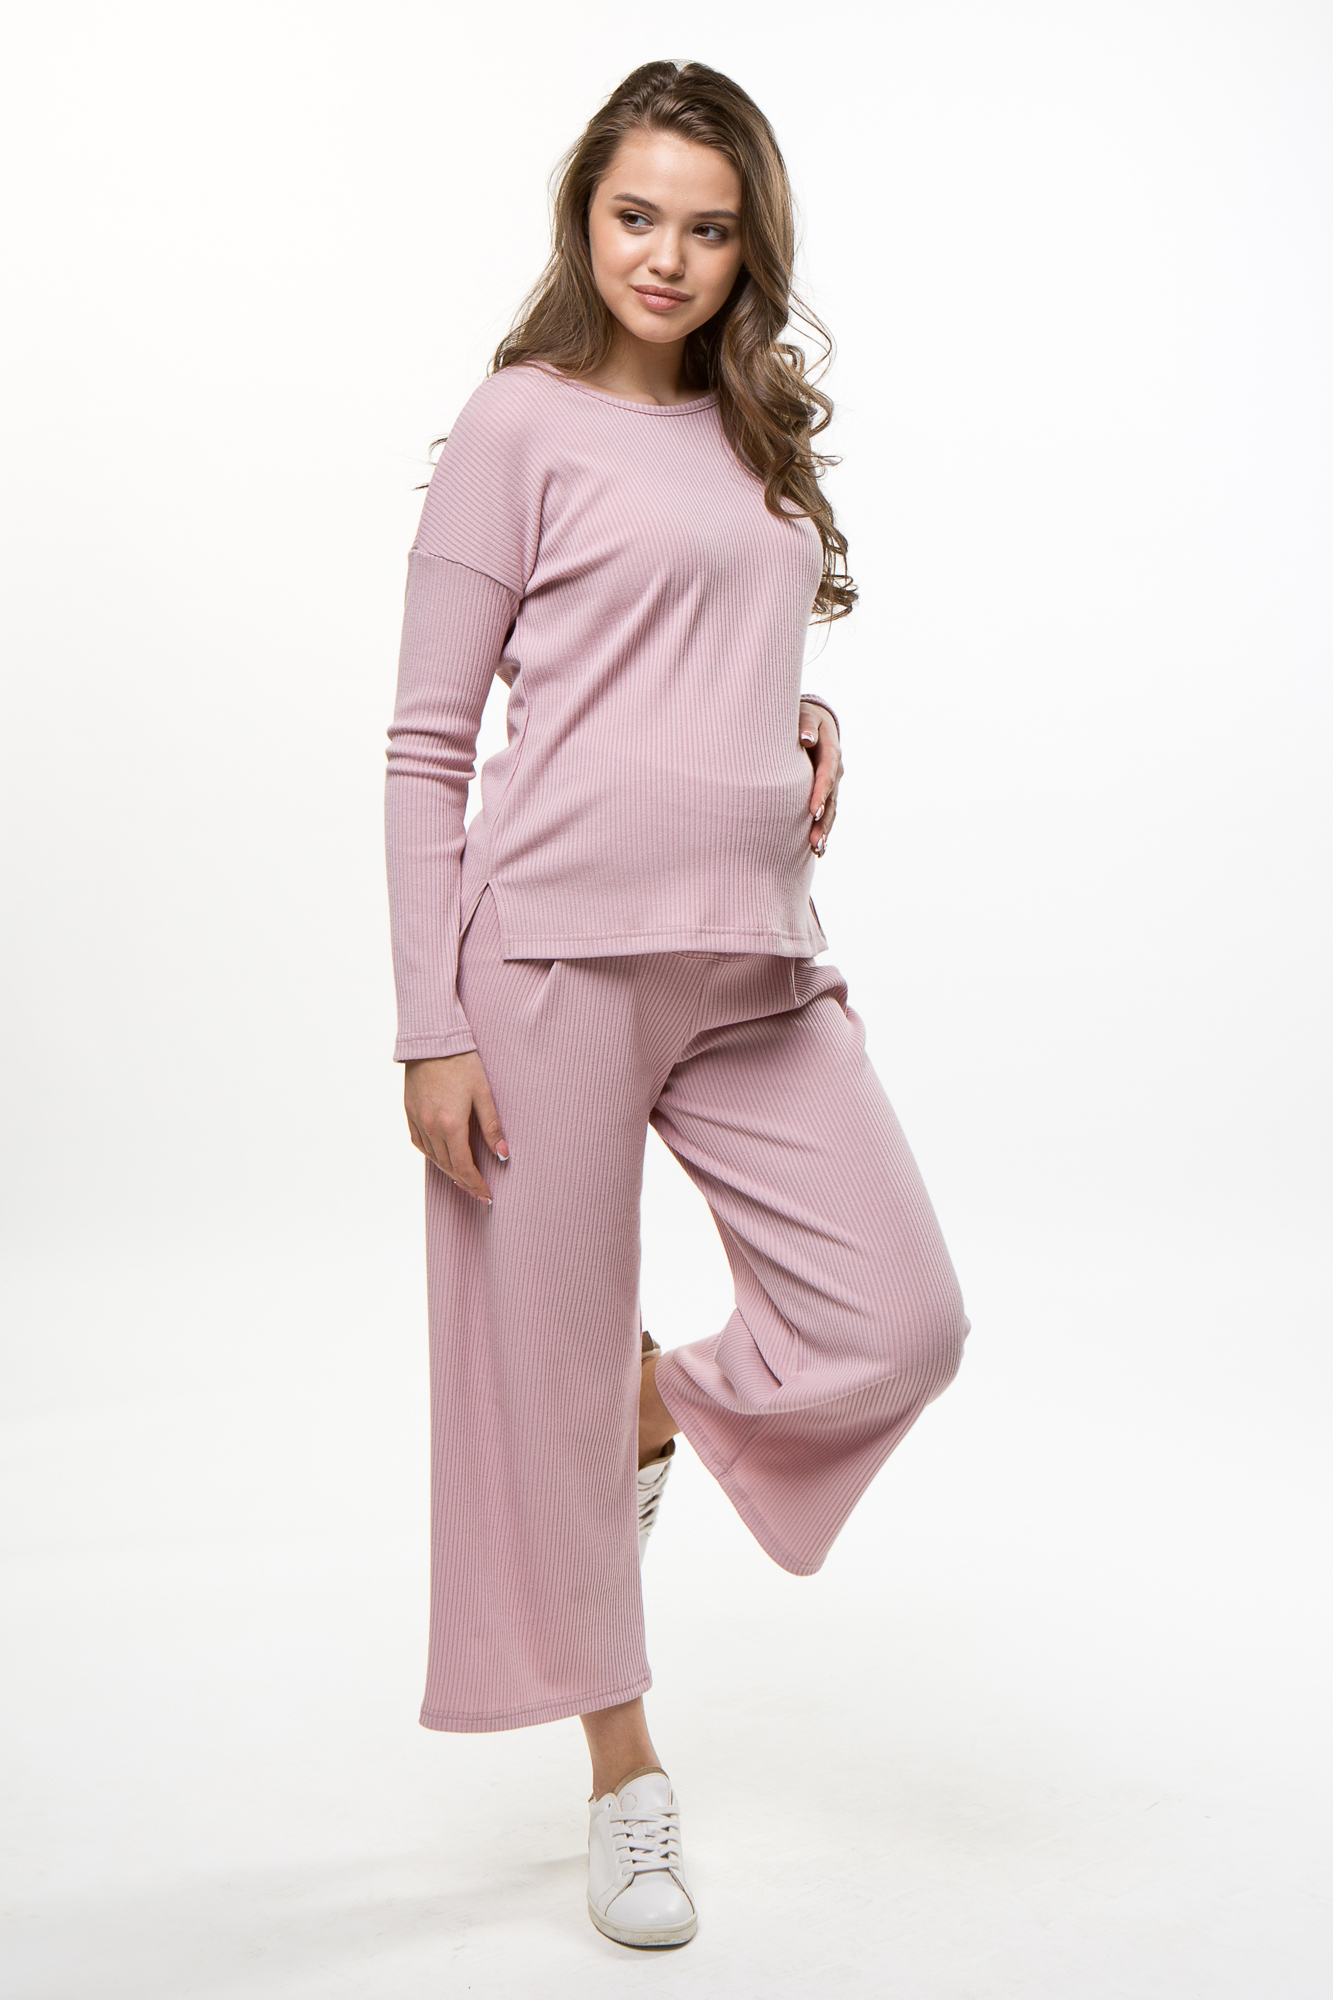 Костюм для беременных женский Magica bellezza 0184а розовый 52 RU